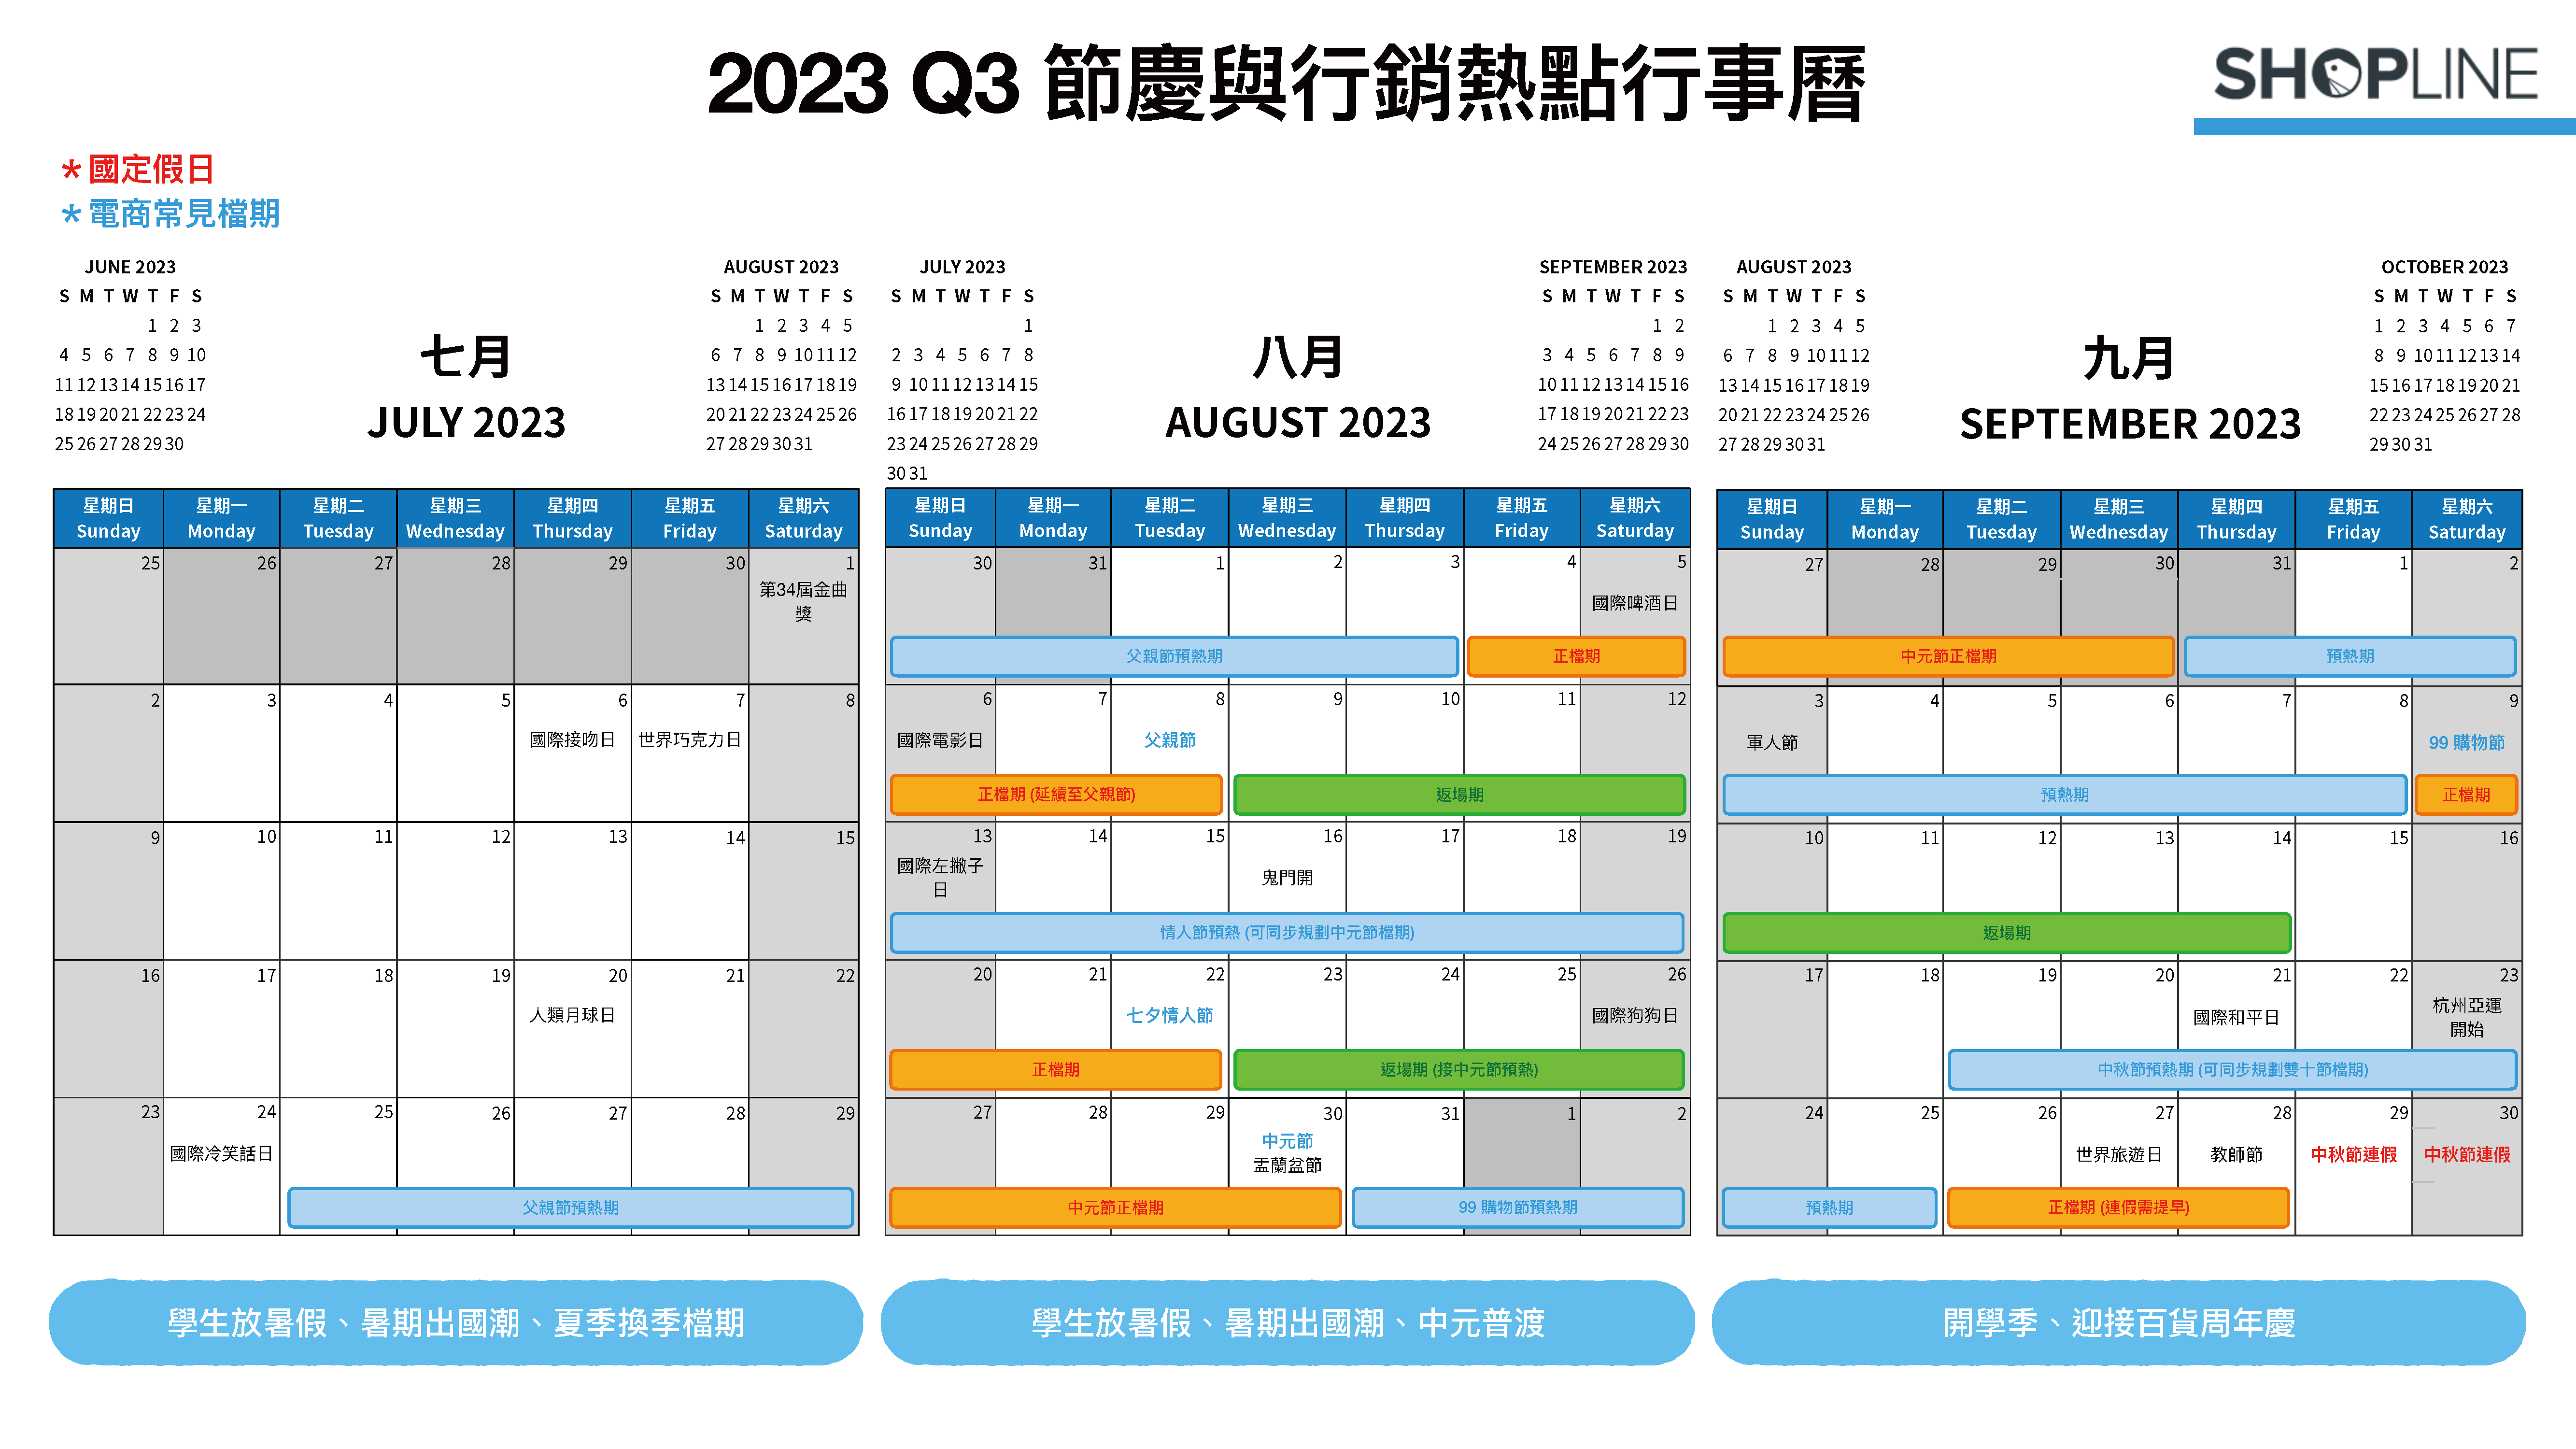 2023 Q3 節慶與行銷熱點月曆